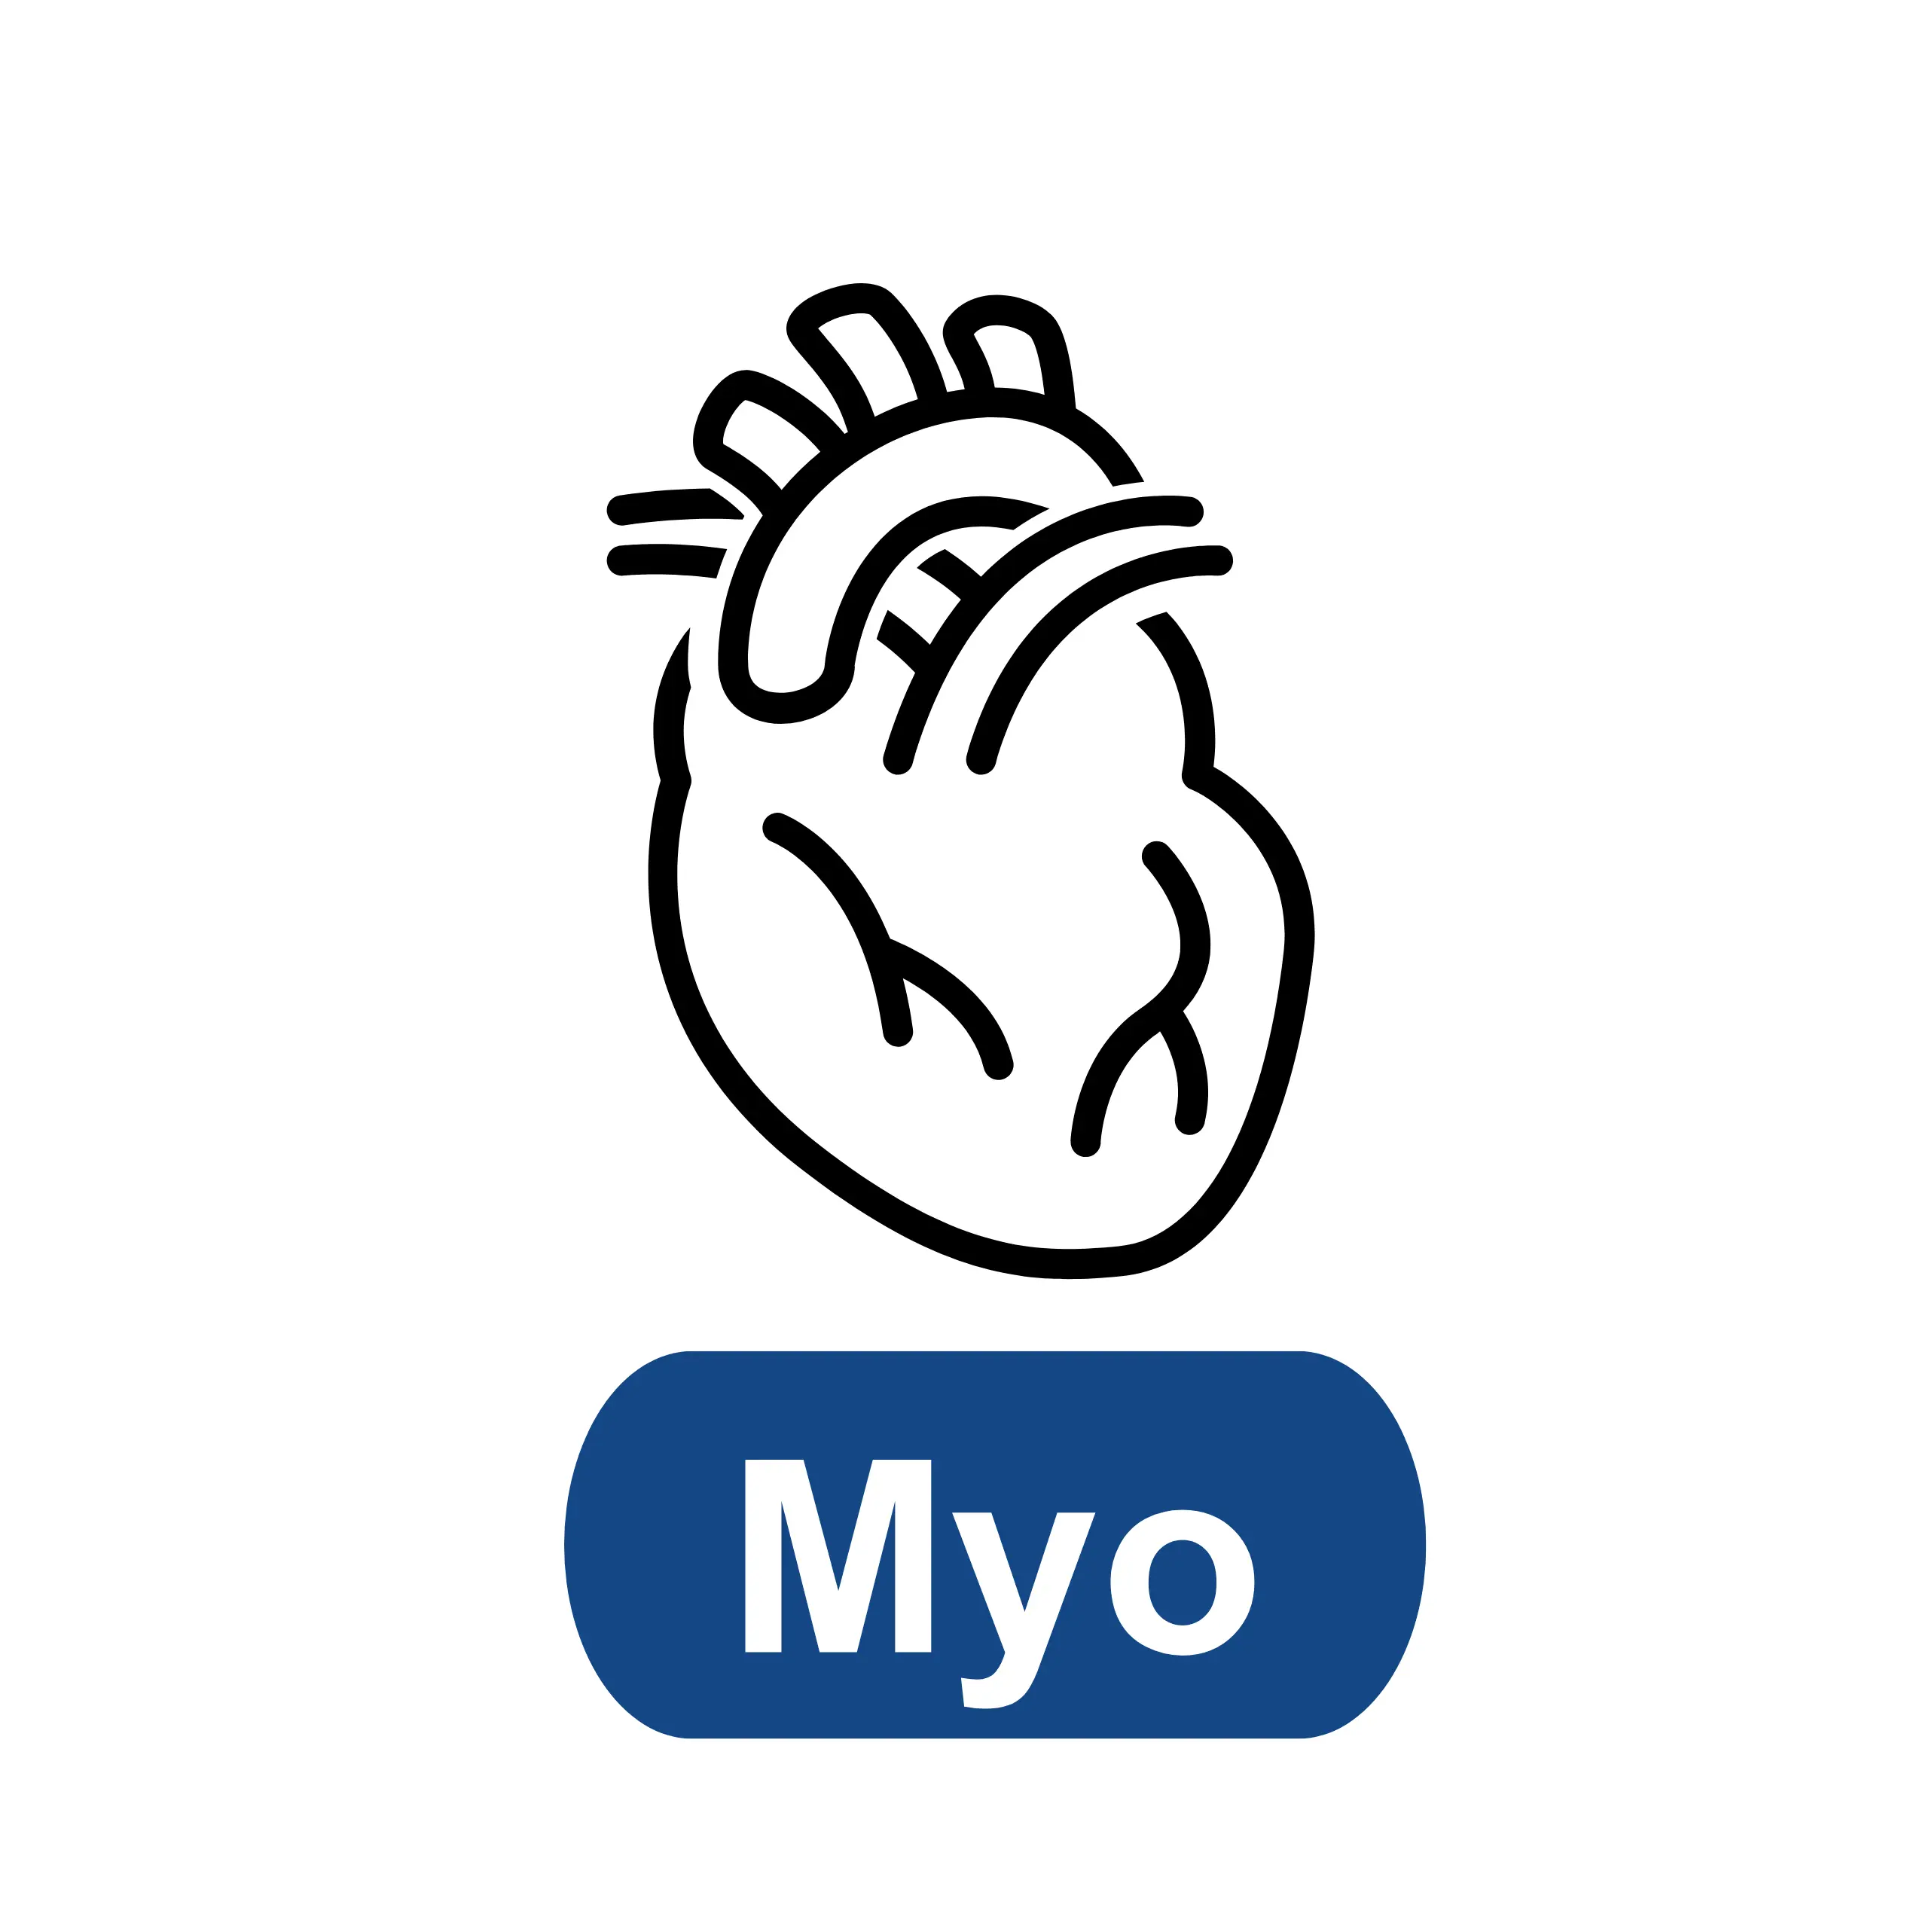 Myoglobin (Myo)